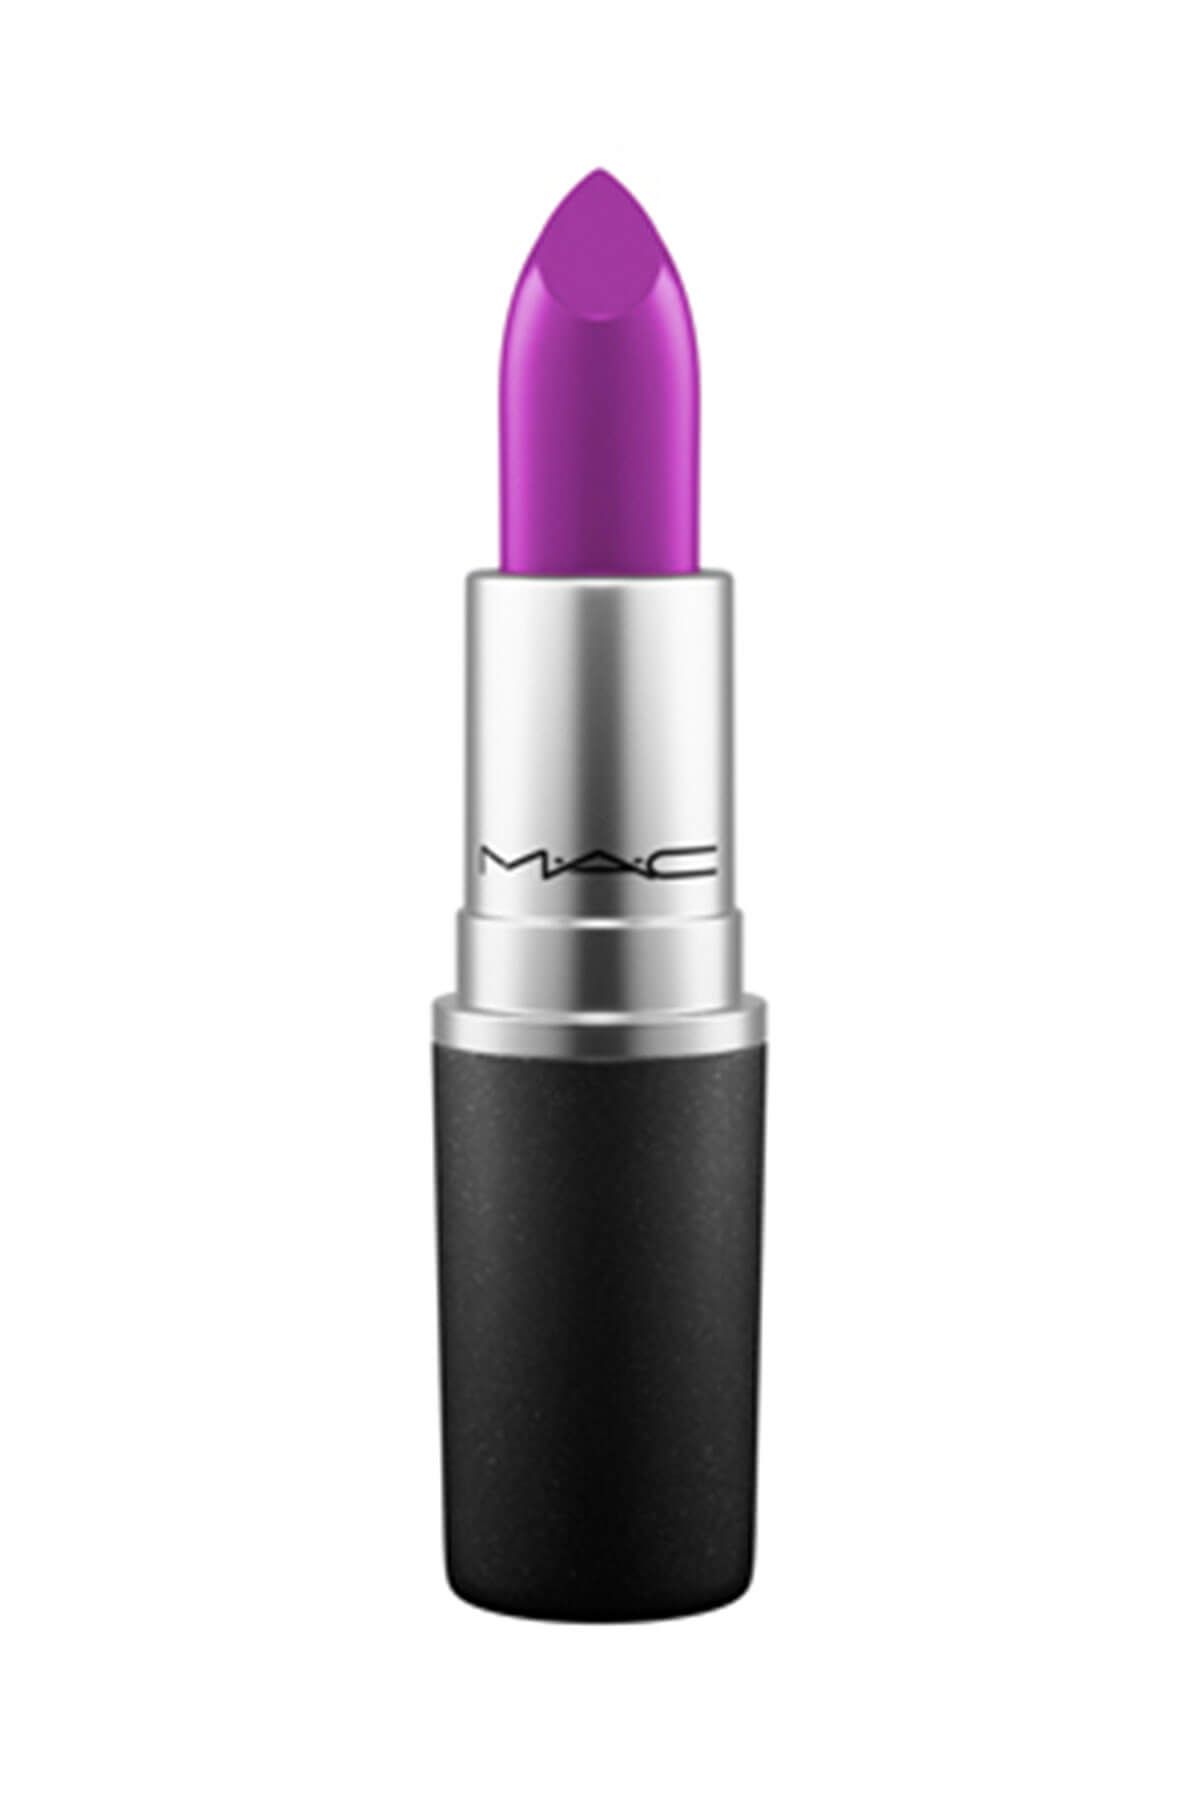 Mac Kremsi Ruj - Amplified Lipstick Violetta 3 g 773602072224